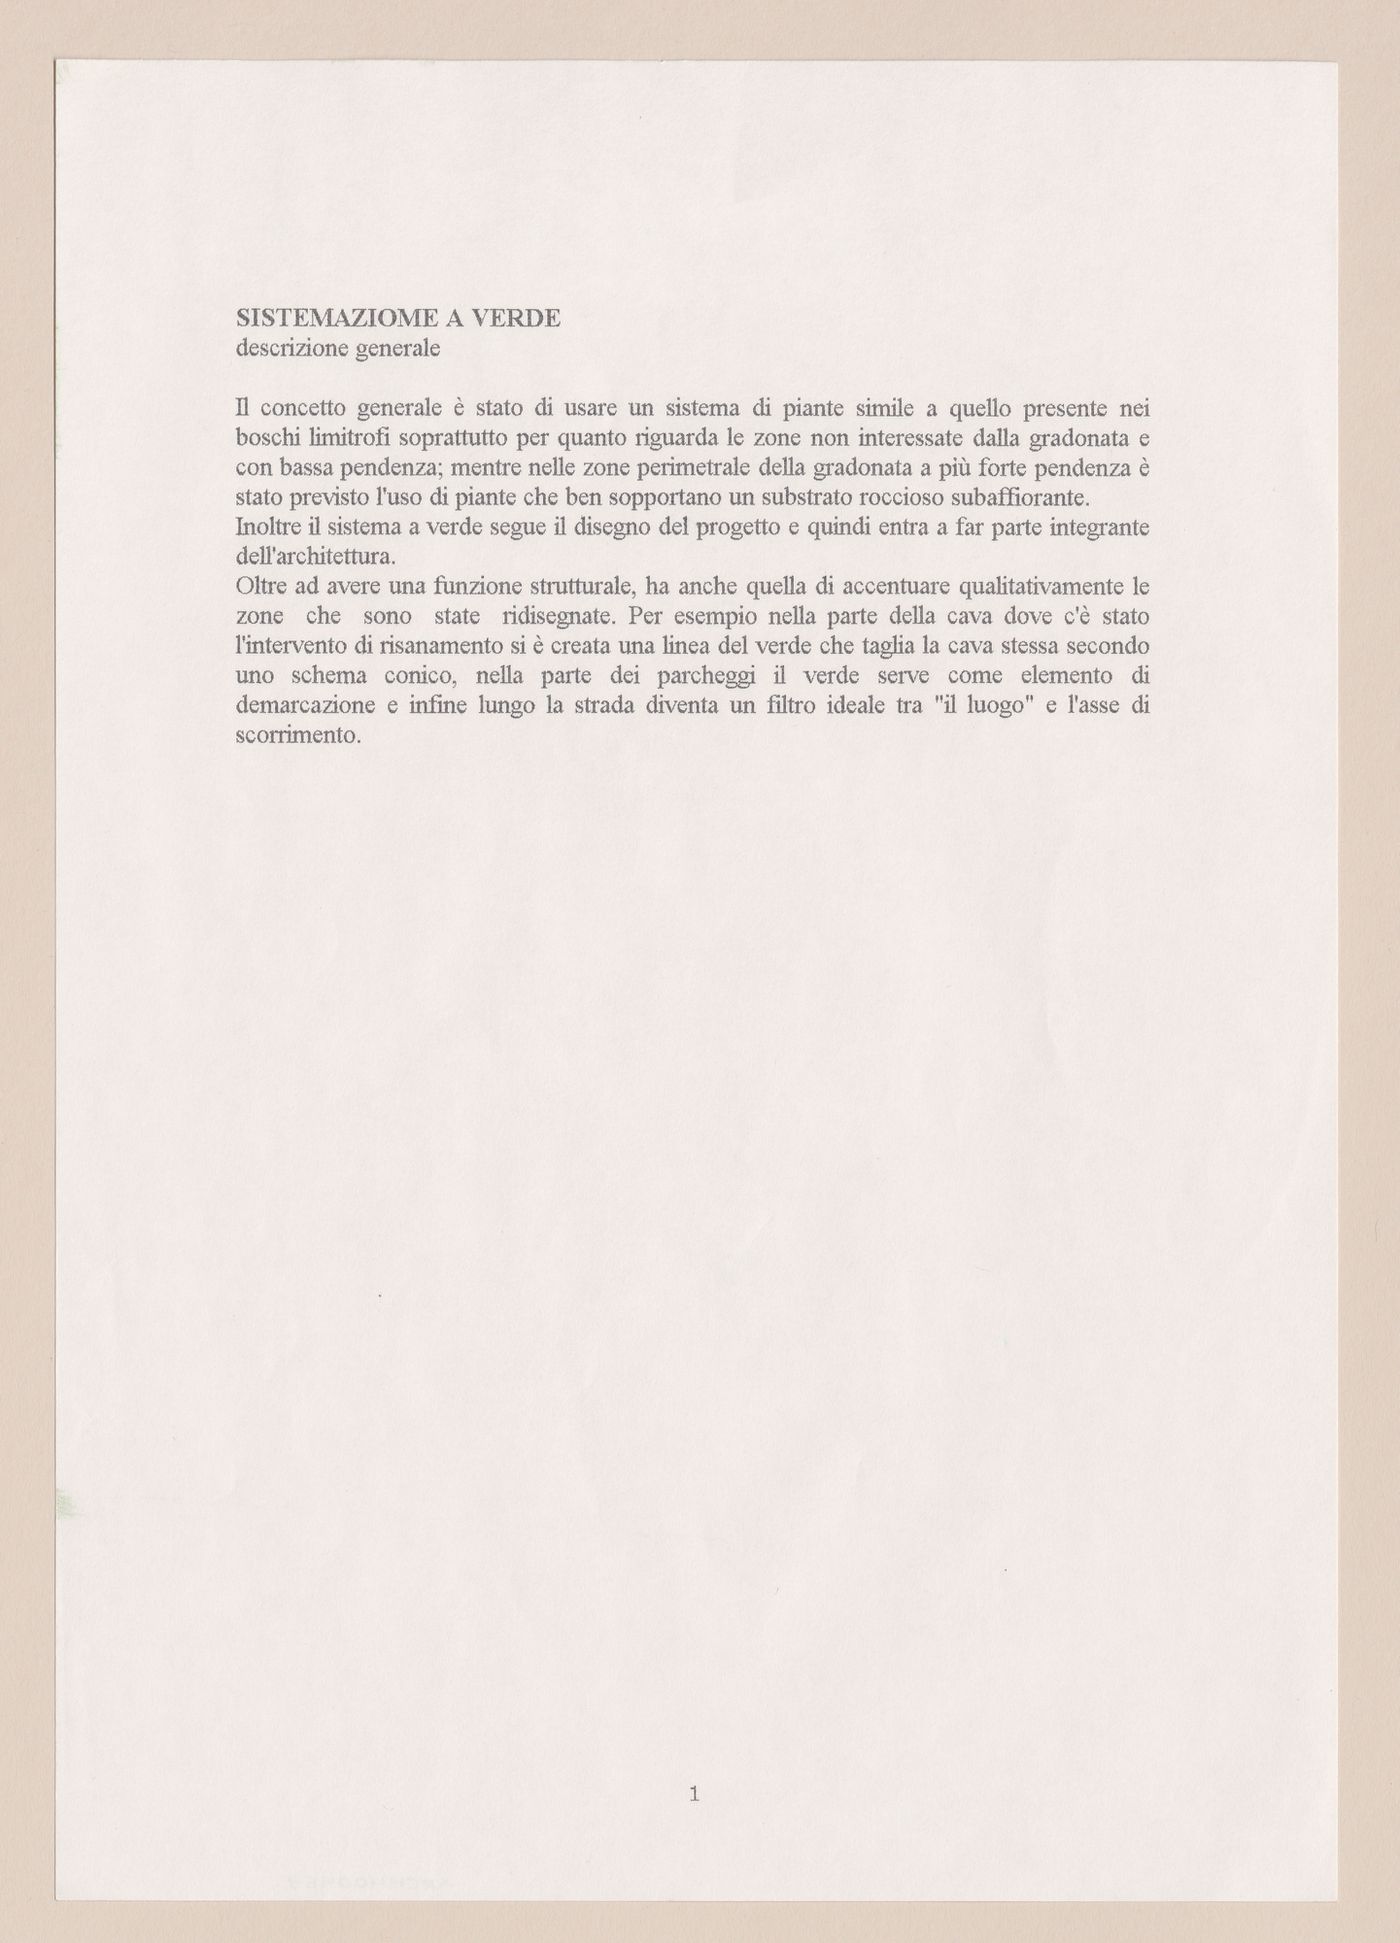 General project description for Riqualificazione cava di San Carlo [Redevelopment San Carlo quarry], San Vincenzo, Livorno, Italy